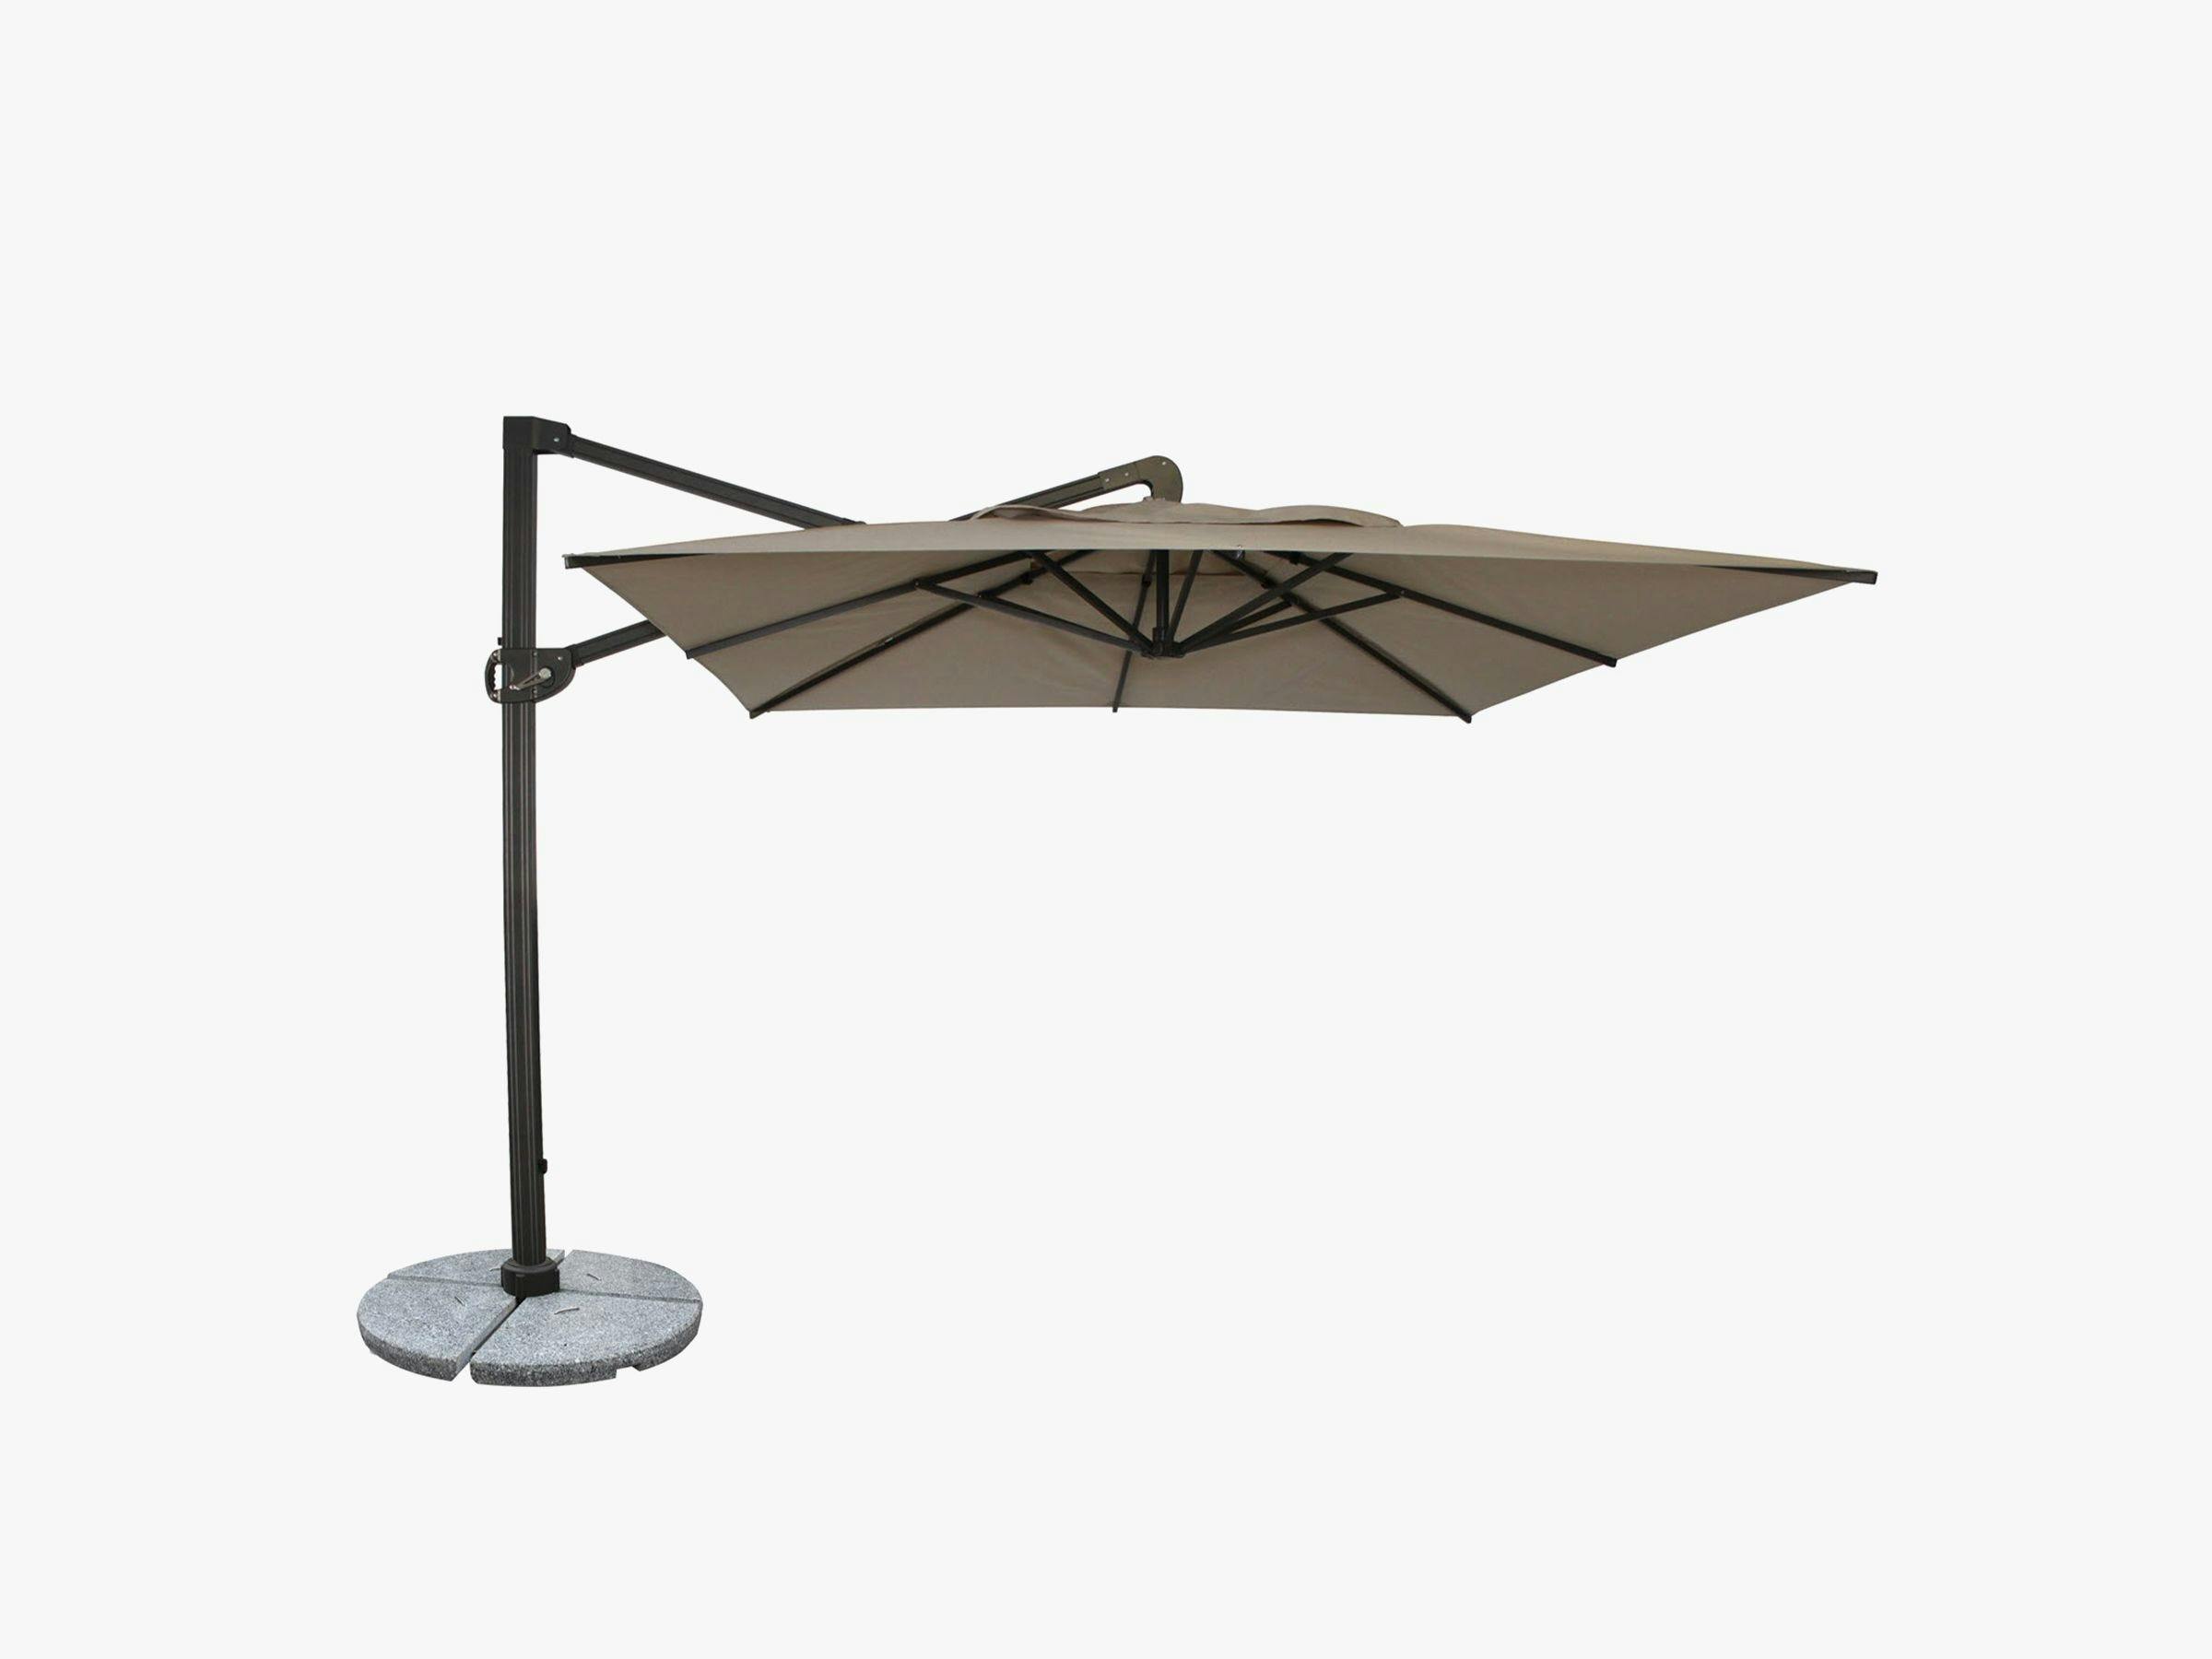 Alero Square 10' Cantilever Umbrella